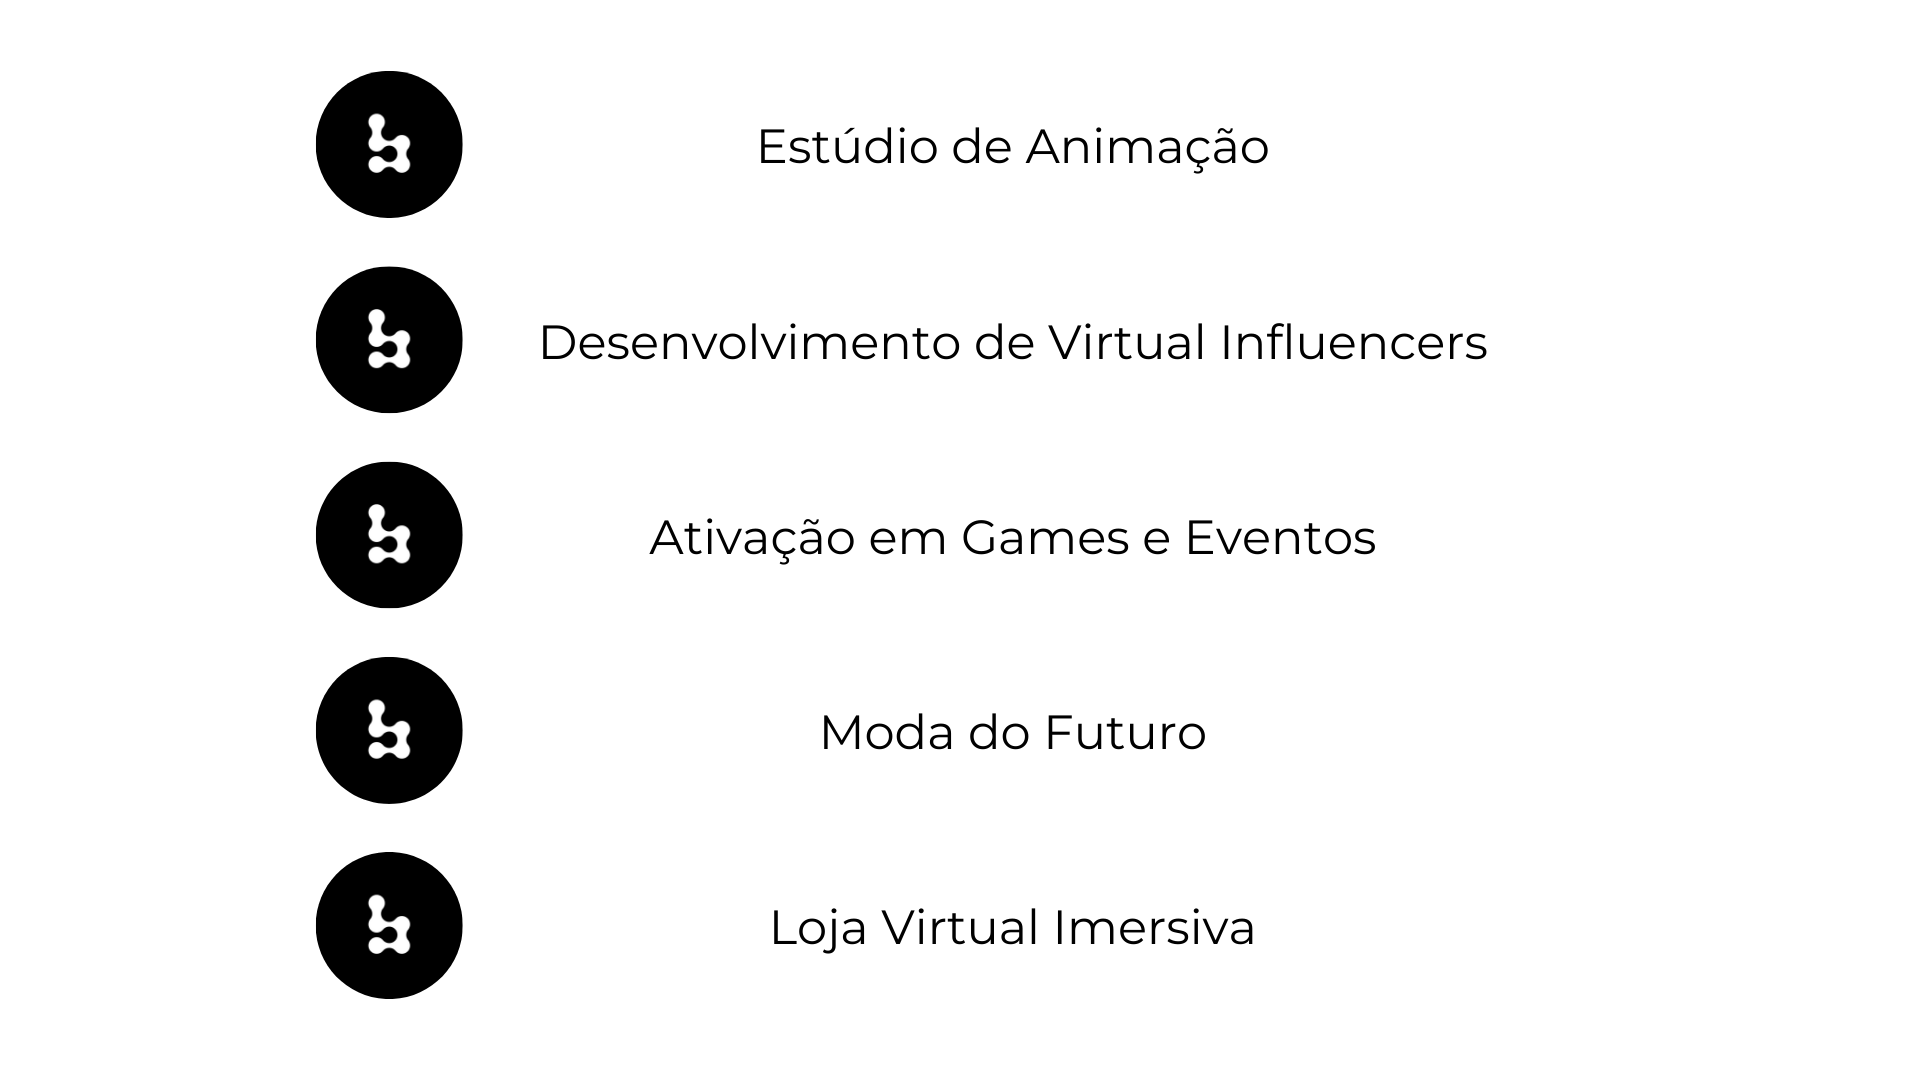 Estúdio de animação, desenvolvimento de virtual influencers, ativação em games e eventos, moda do futuro, loja virtual imersiva.